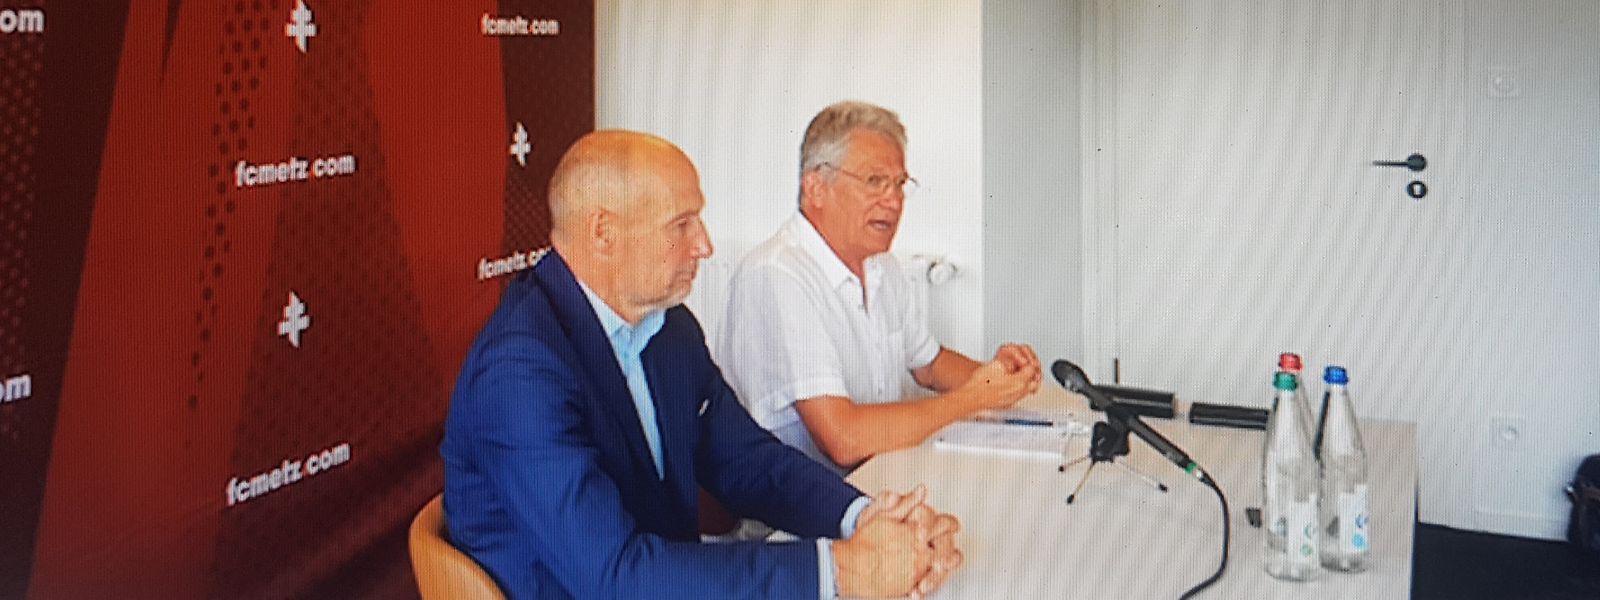 La conférence de presse de présentation de László Bölöni, nouvel entraîneur du FC Metz, a été retransmise en direct sur le site internet du club. Le technicien roumain était accompagné du directeur sportif, Pierre Dréossi.